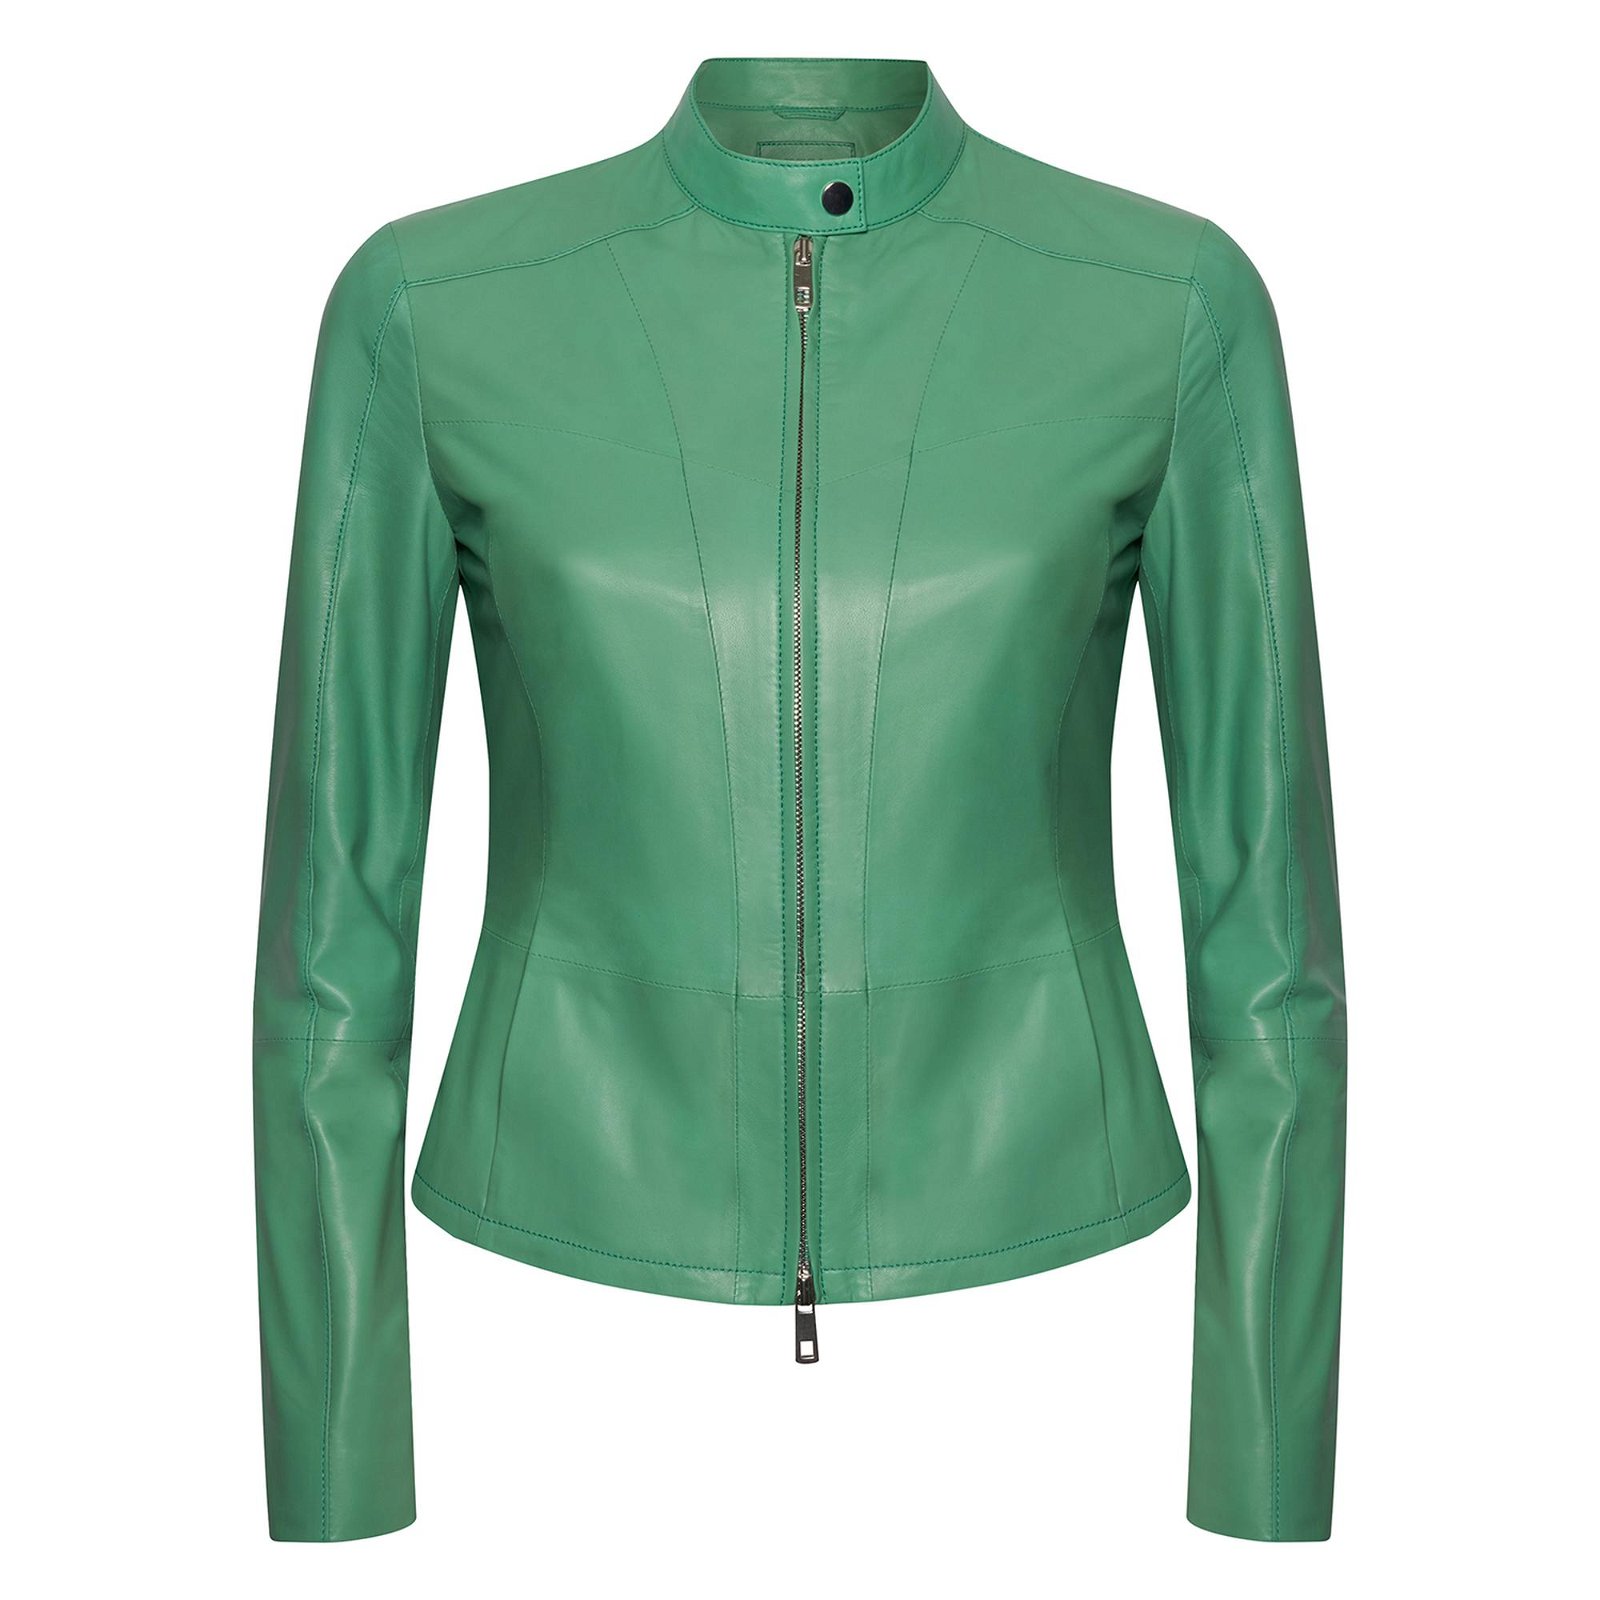  Kalle Yeşil Kadın Deri Ceket